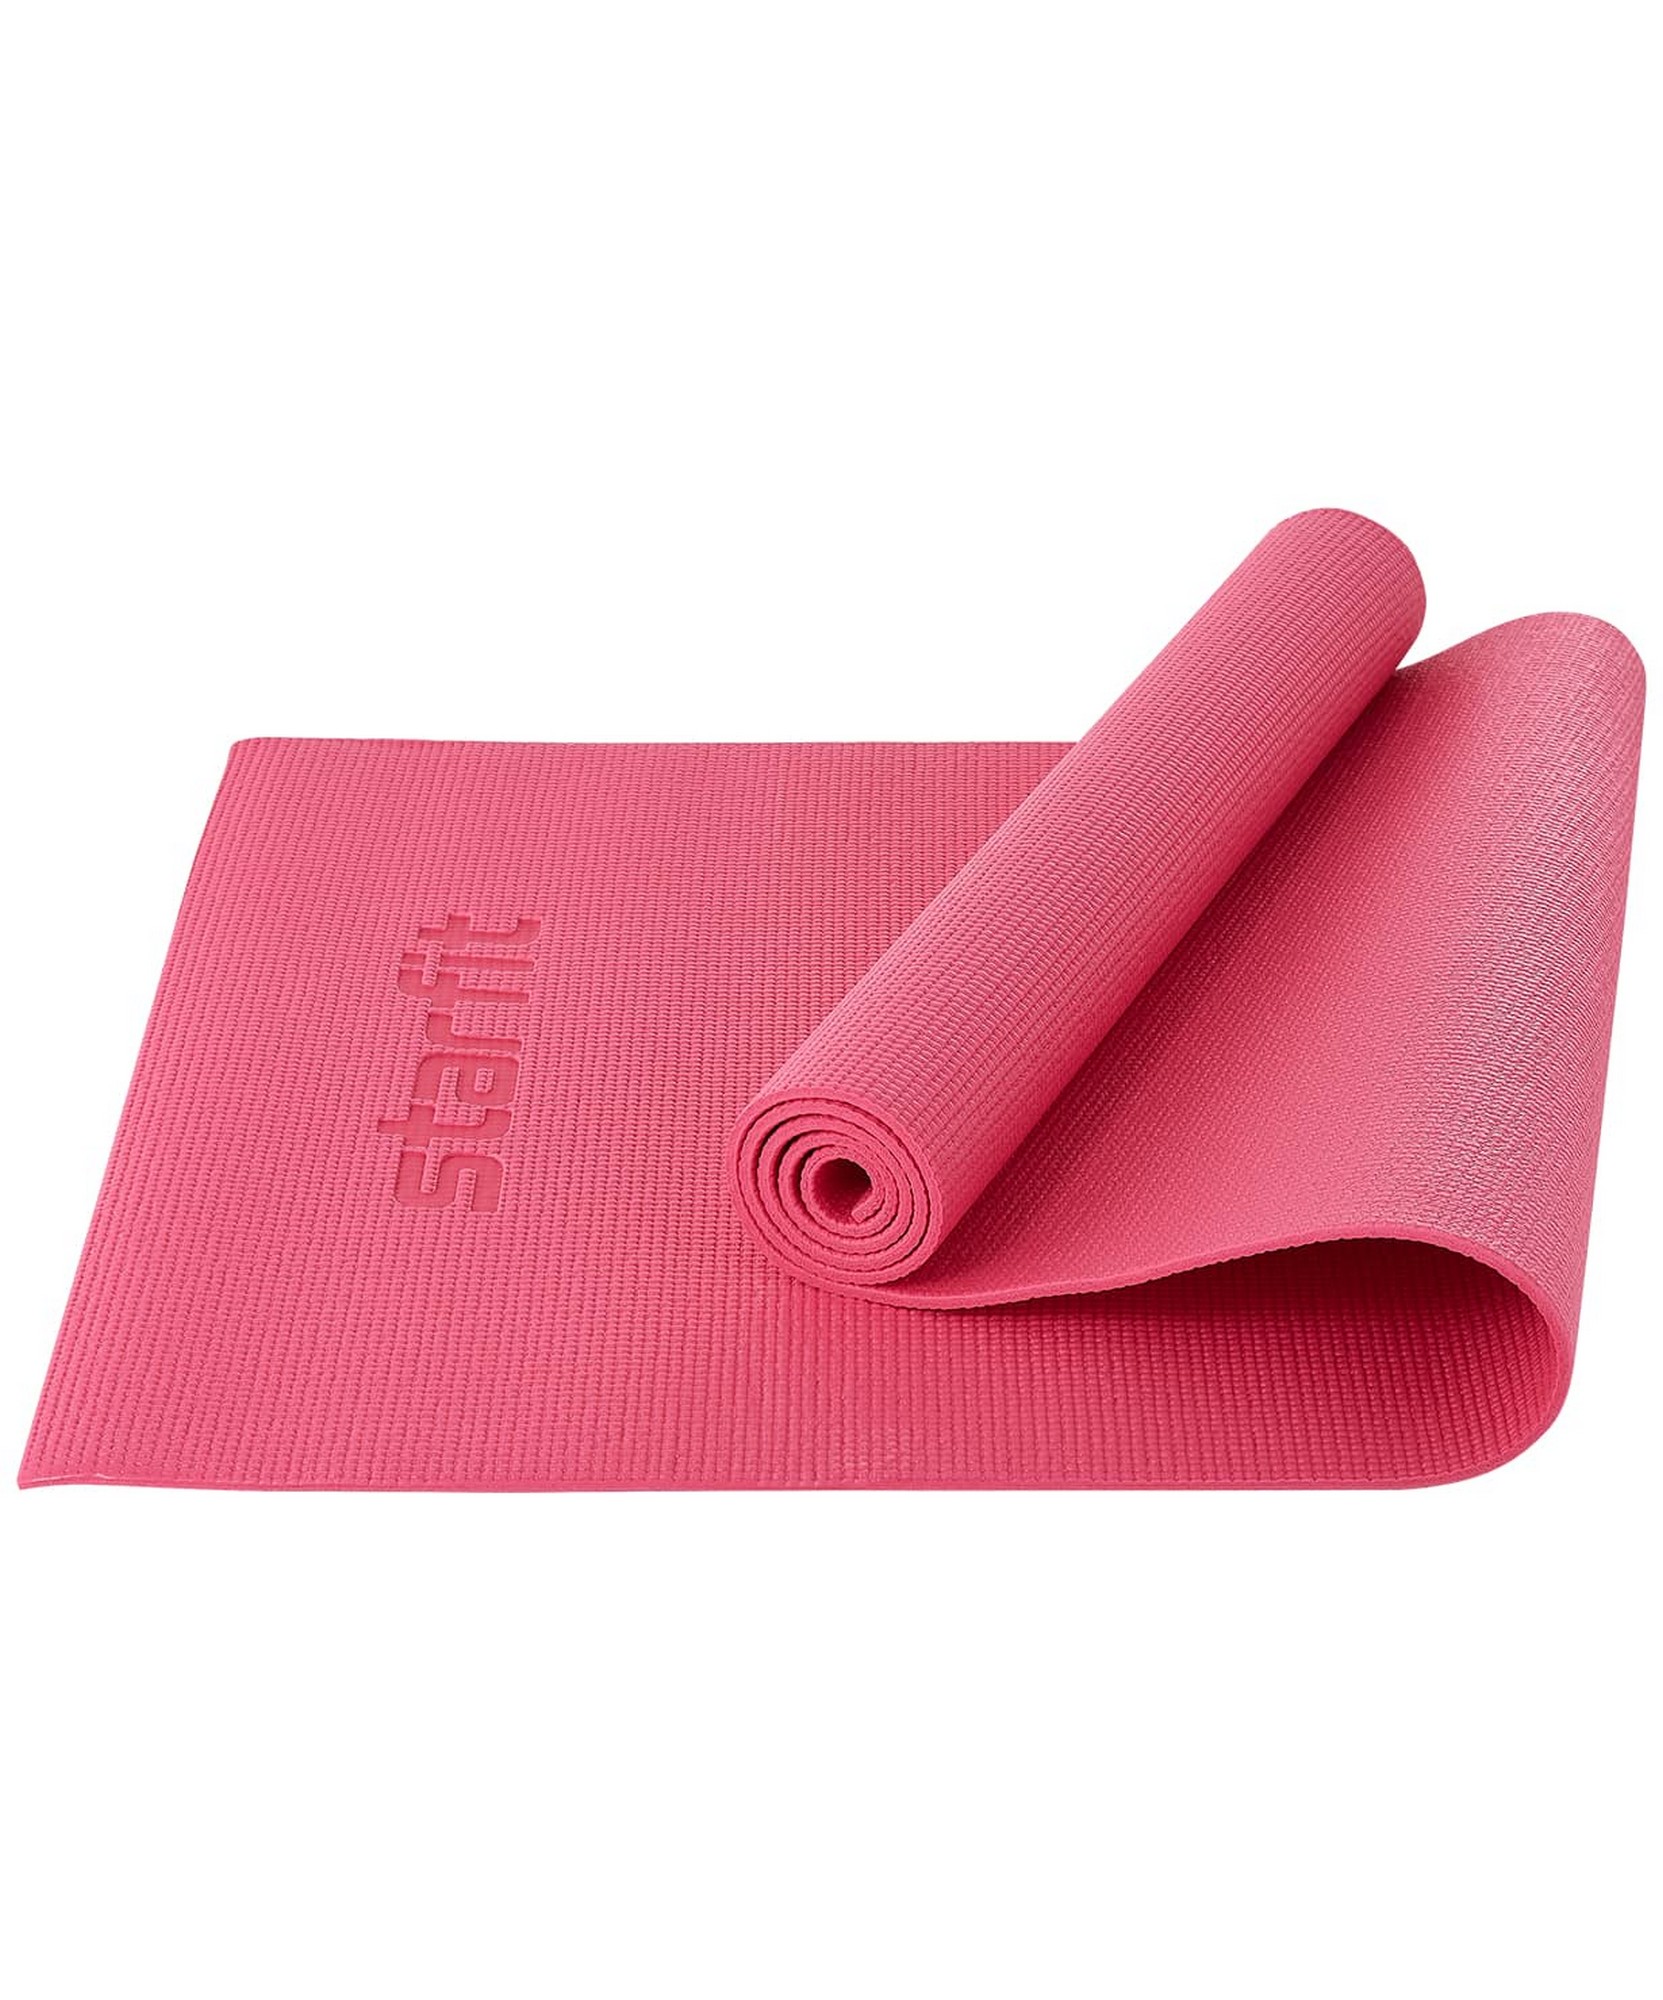 Купить Коврик для йоги и фитнеса 173x61x0,6см Star Fit PVC FM-101 розовый,